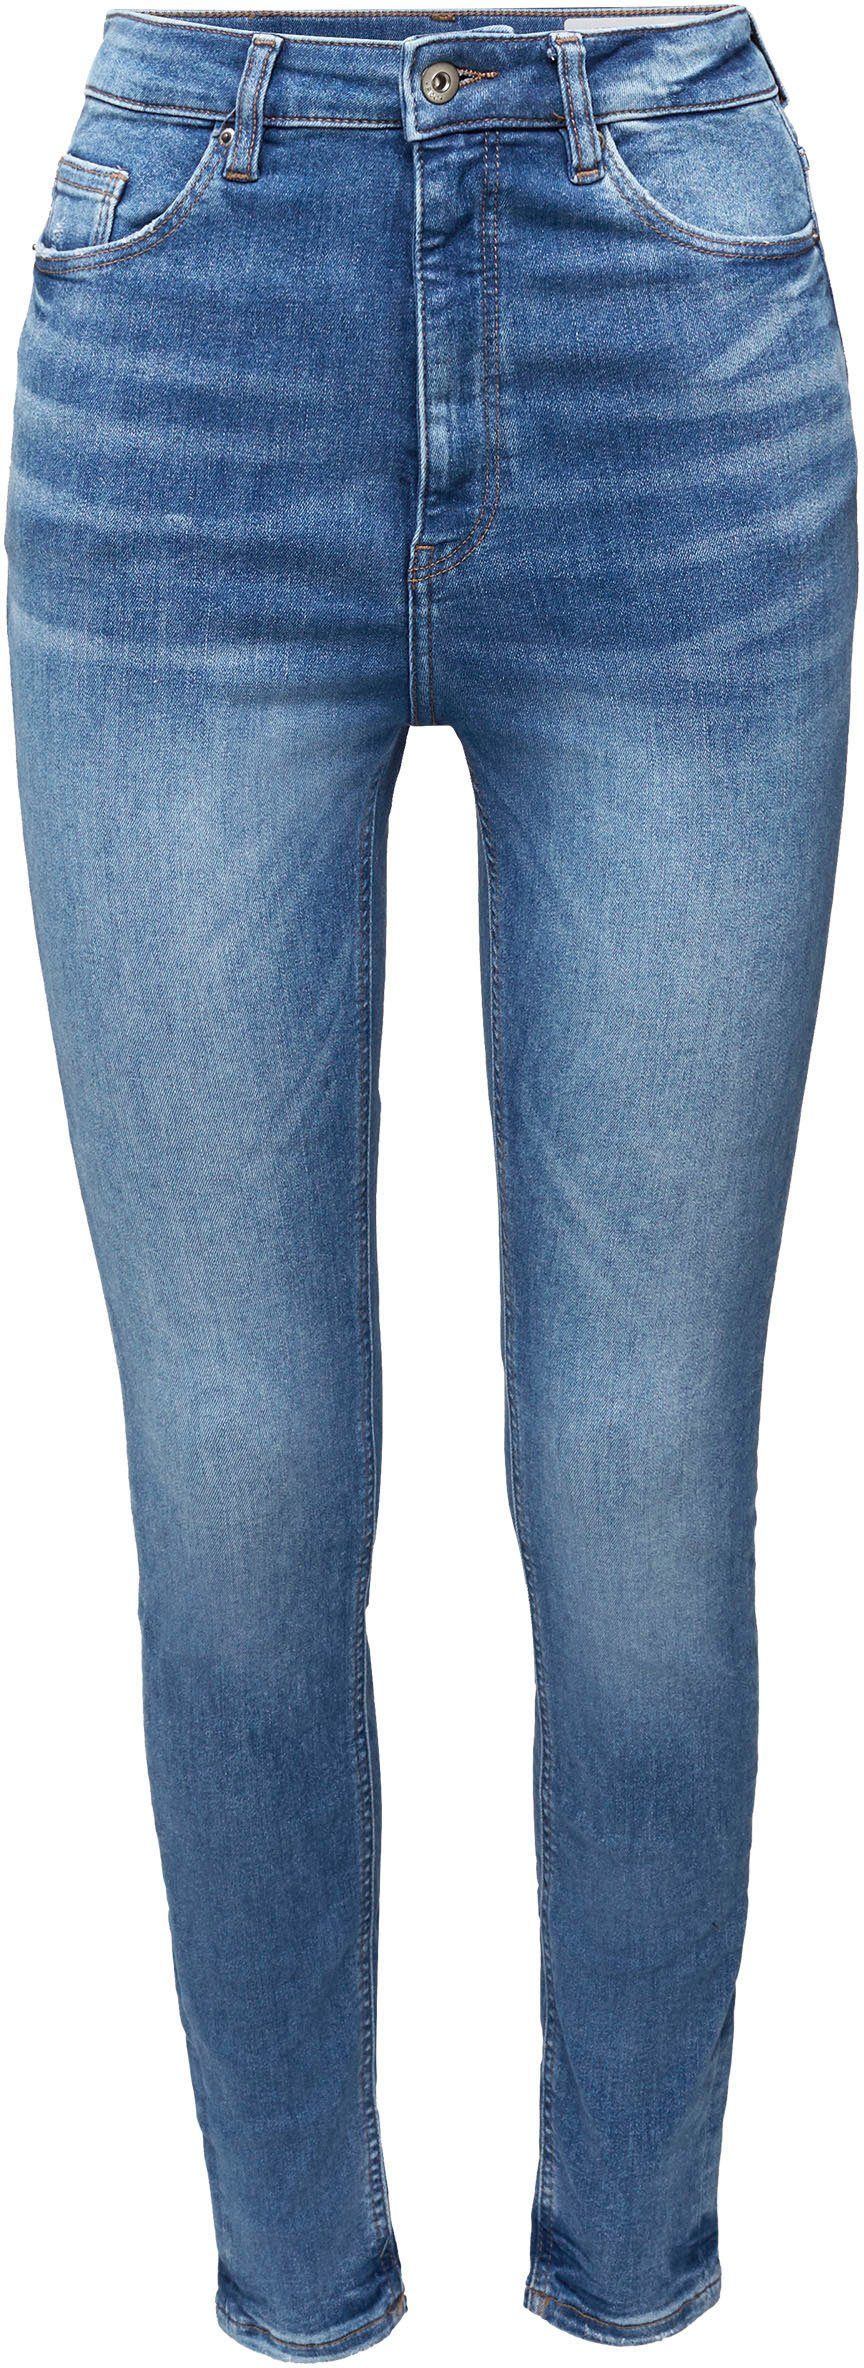 Edc By Esprit Skinny Fit Jeans Aus Weichem Super Stretch Denim Online Kaufen Otto